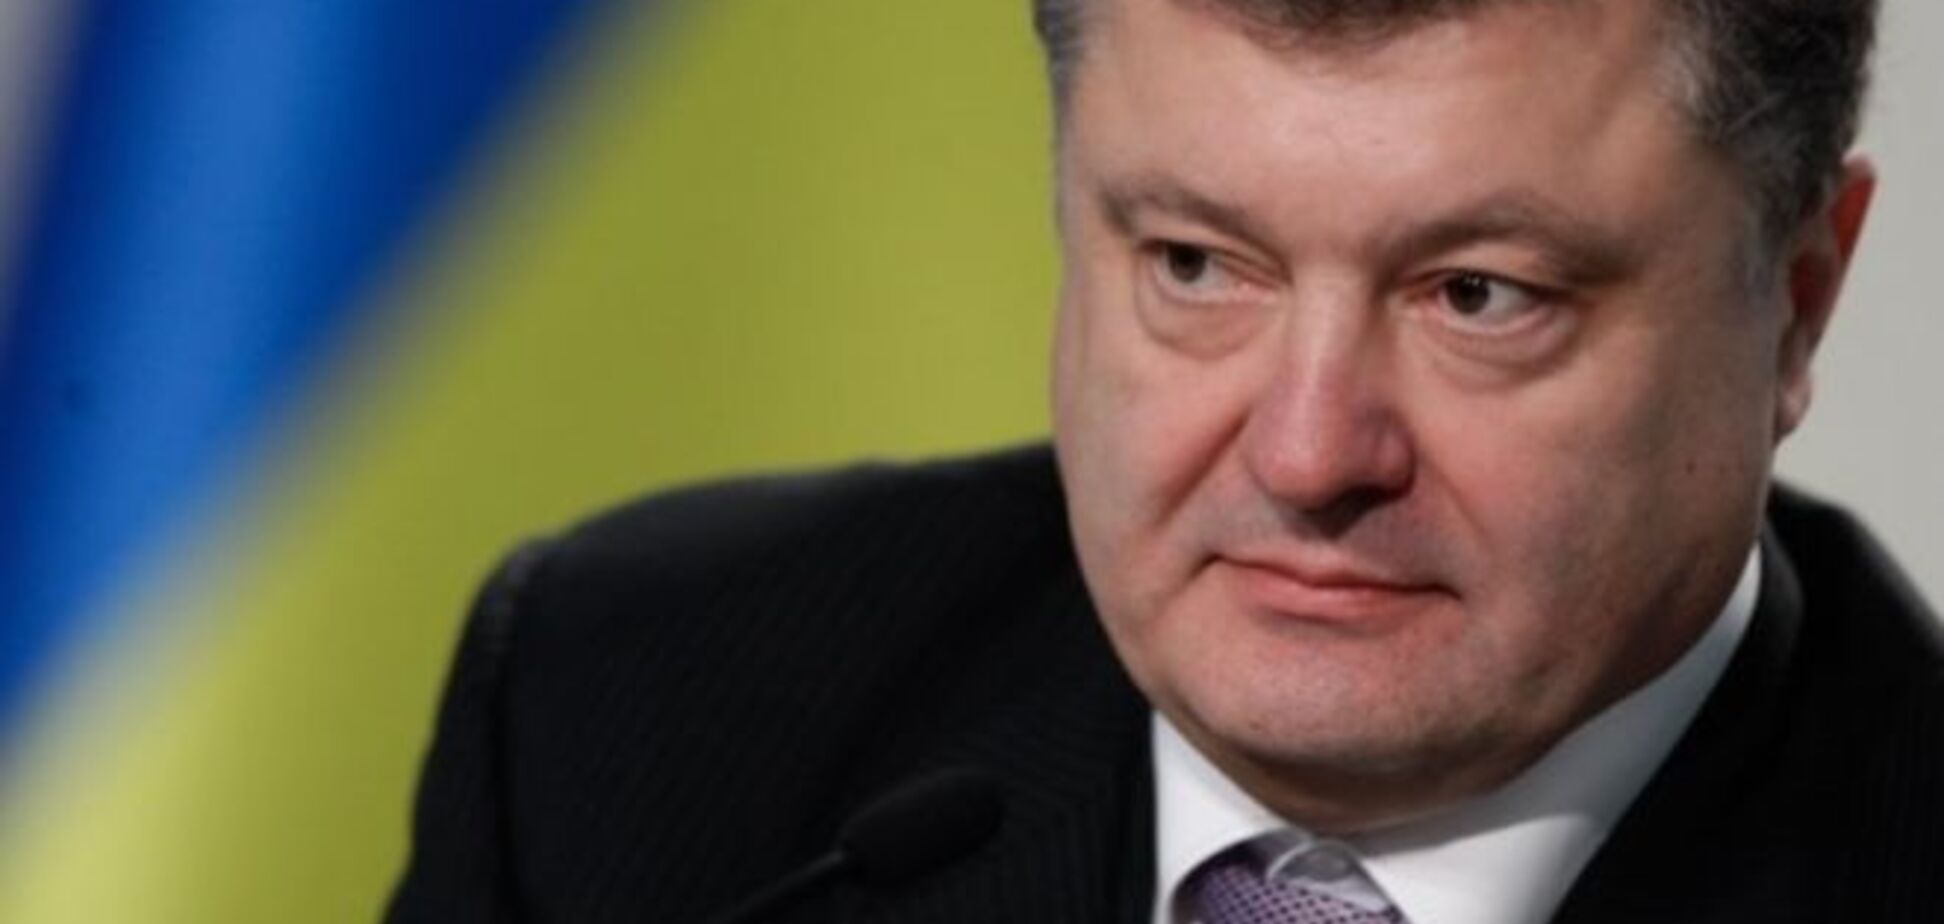 Порошенко о валютных кредитах, Донбассе и взяточниках: главные заявления из интервью